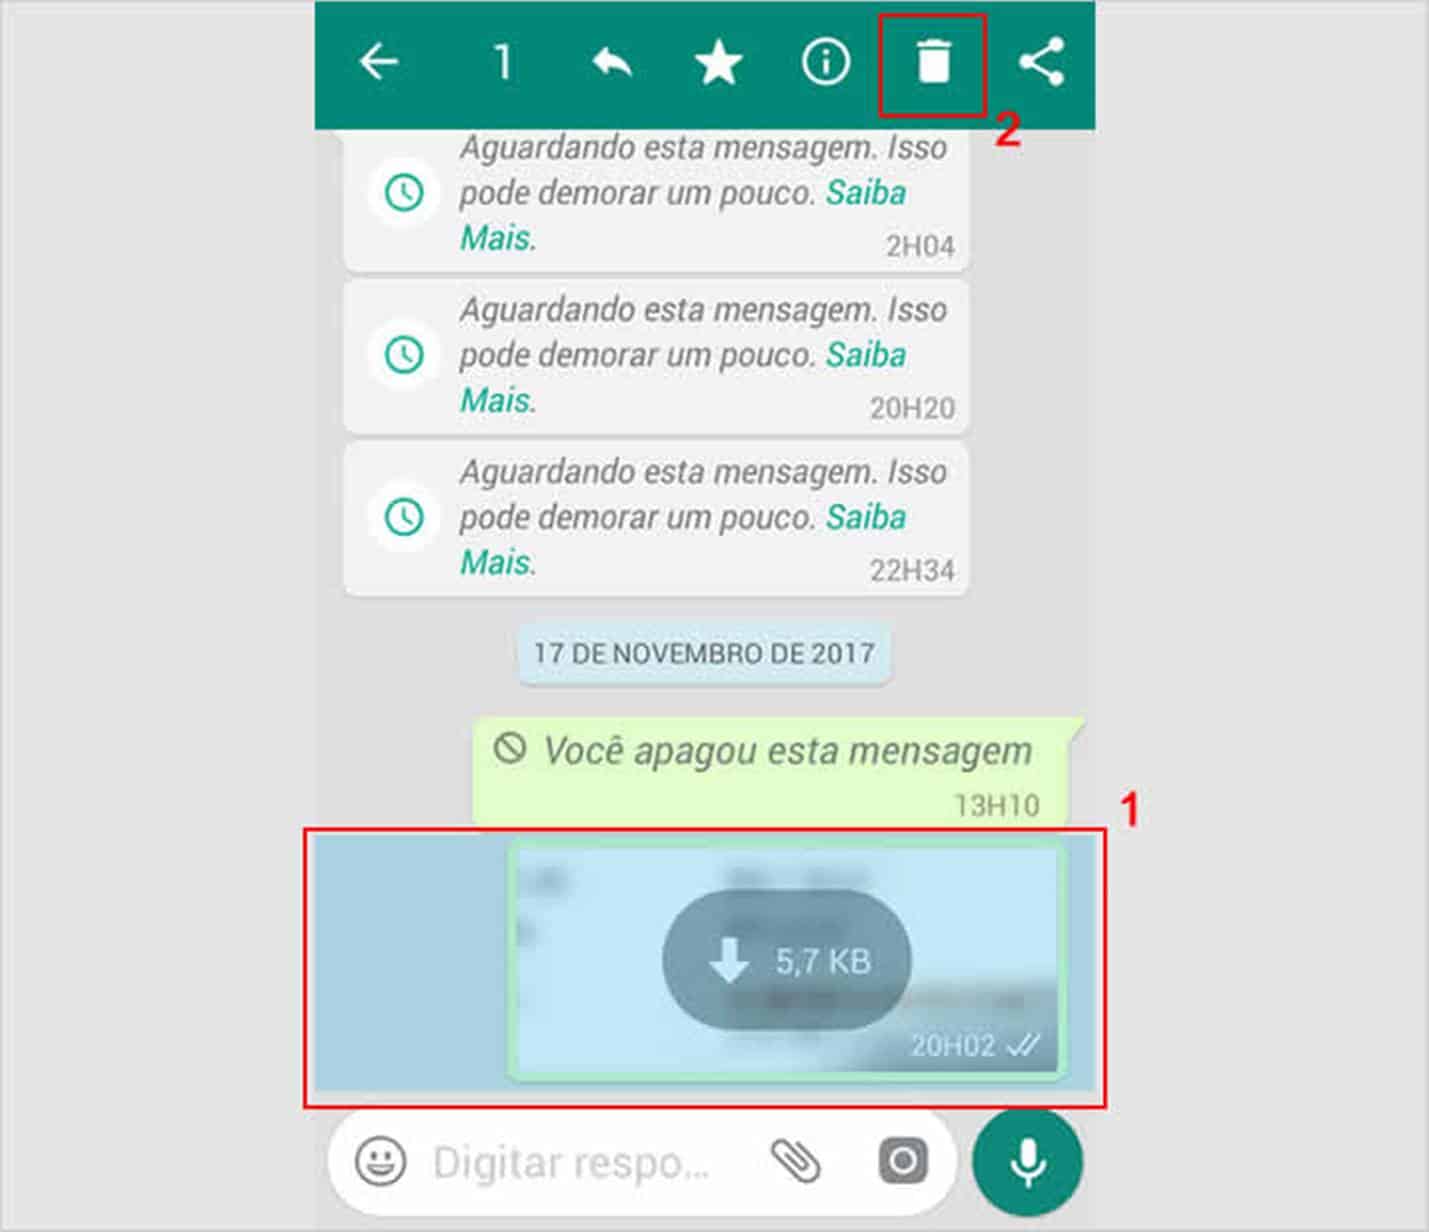 WhatsApp explica por que aparece “Aguardando essa mensagem. Isso pode demorar um pouco”